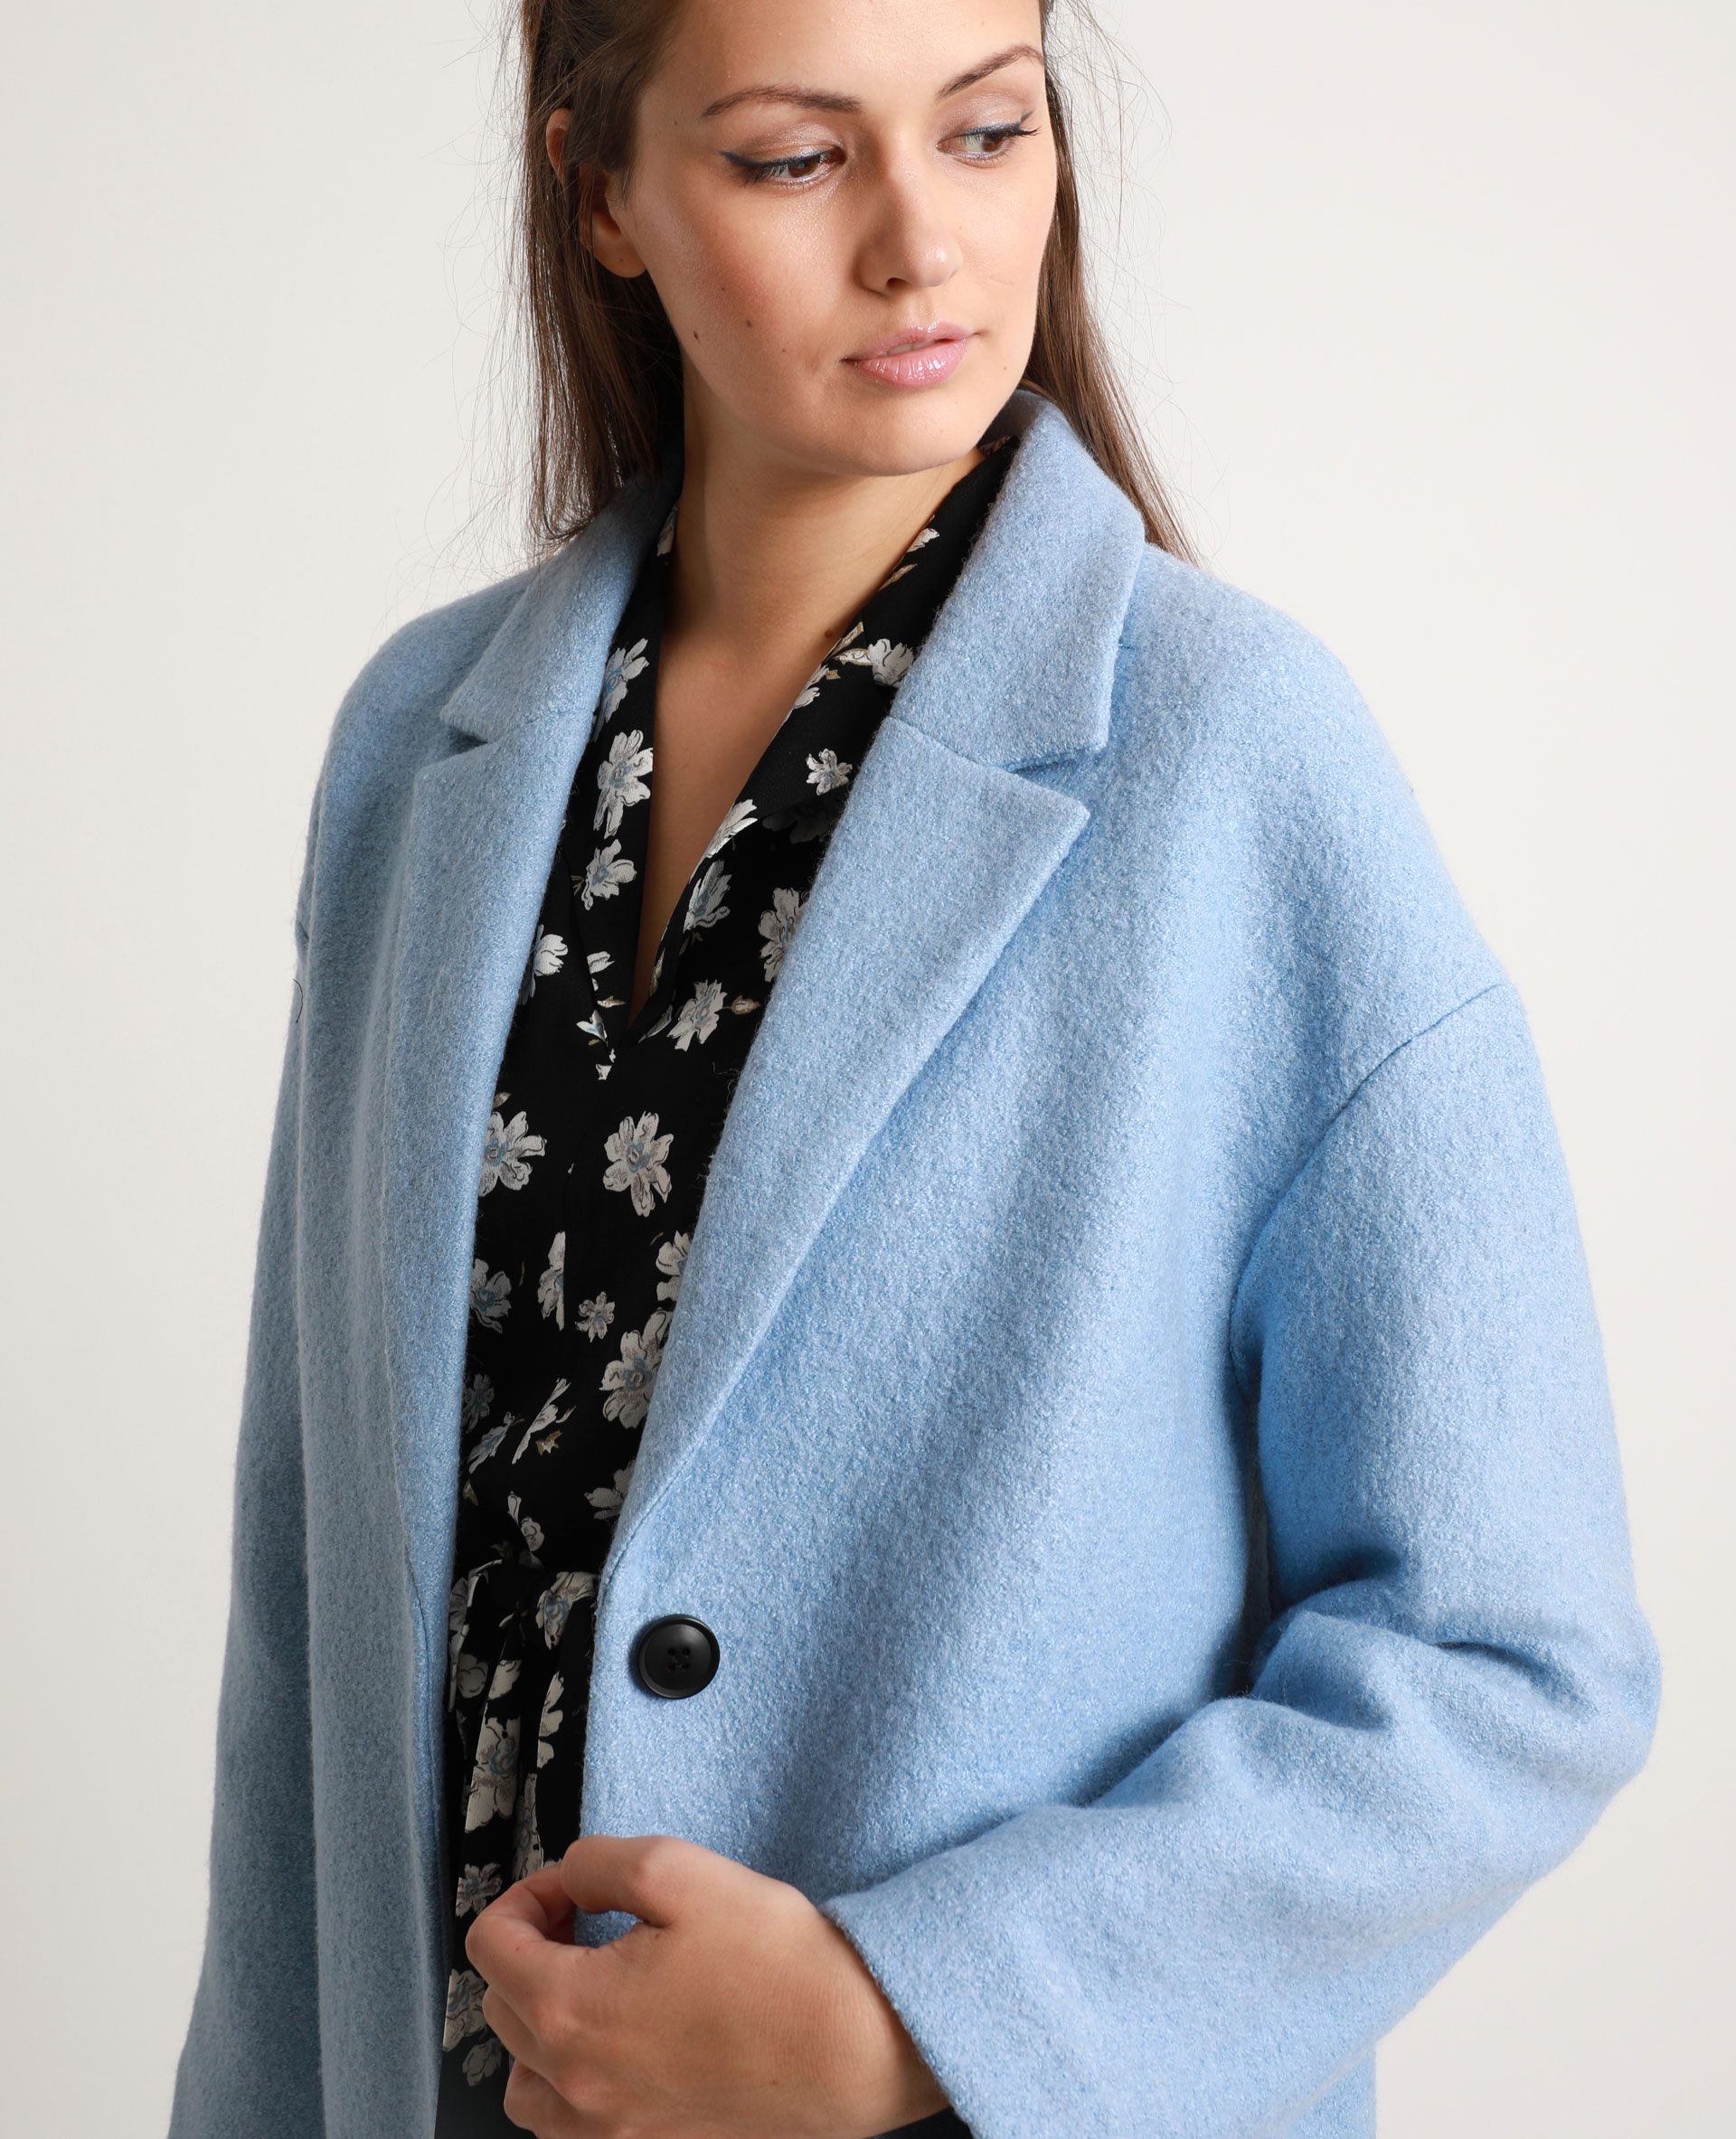 manteau femme bleu laine